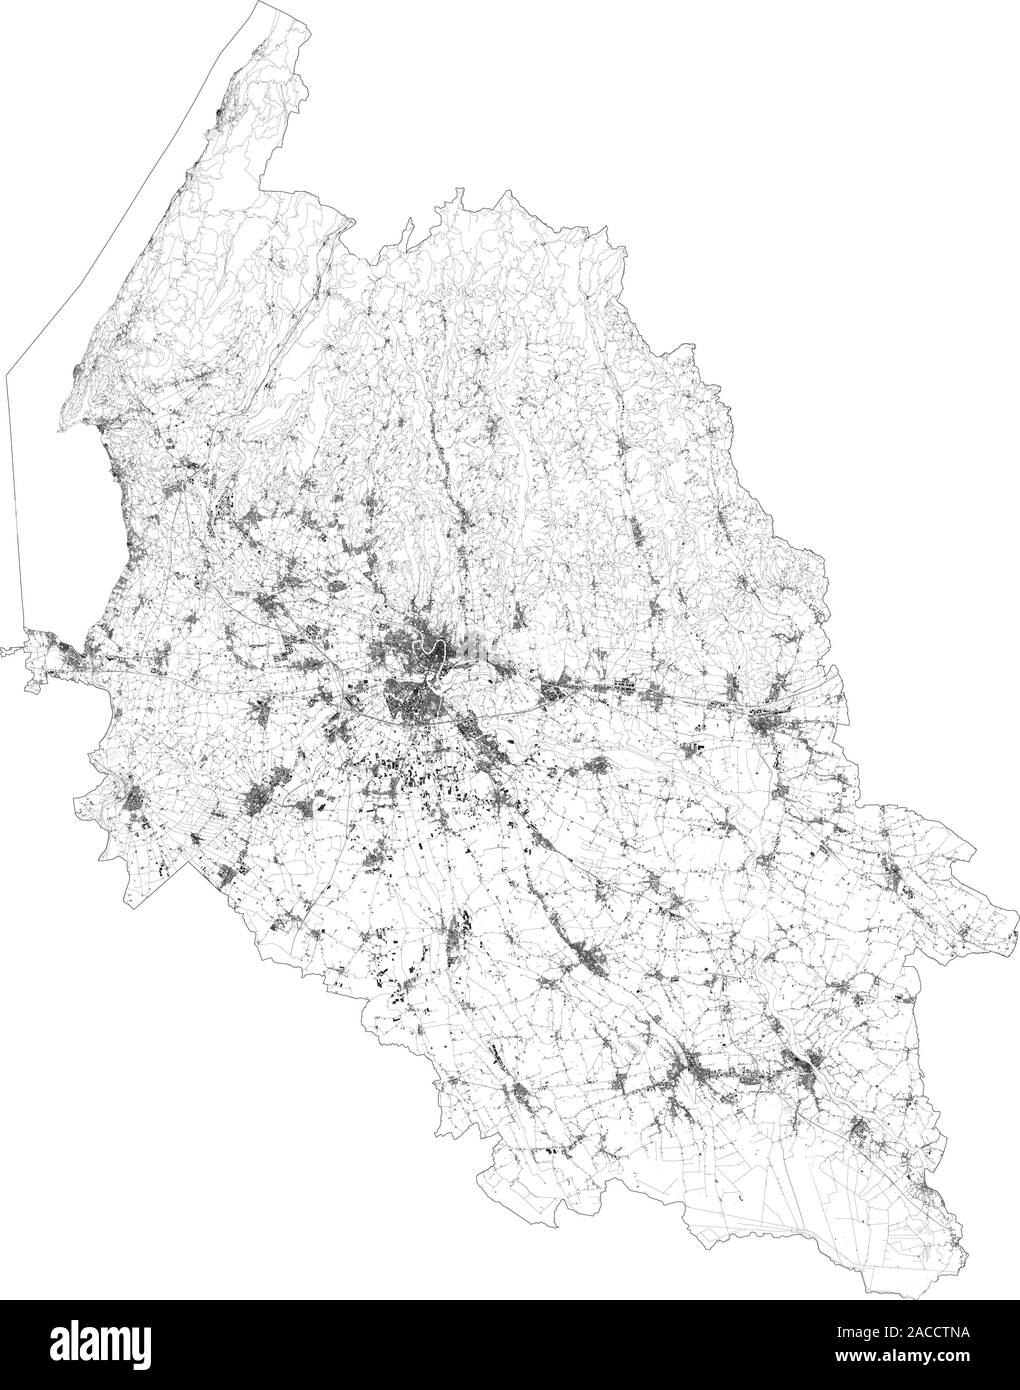 Sat-Karte der Provinz Verona, Städte und Straßen, Gebäude und Straßen der Umgebung. Venetien, Italien. Karte Straßen Stock Vektor